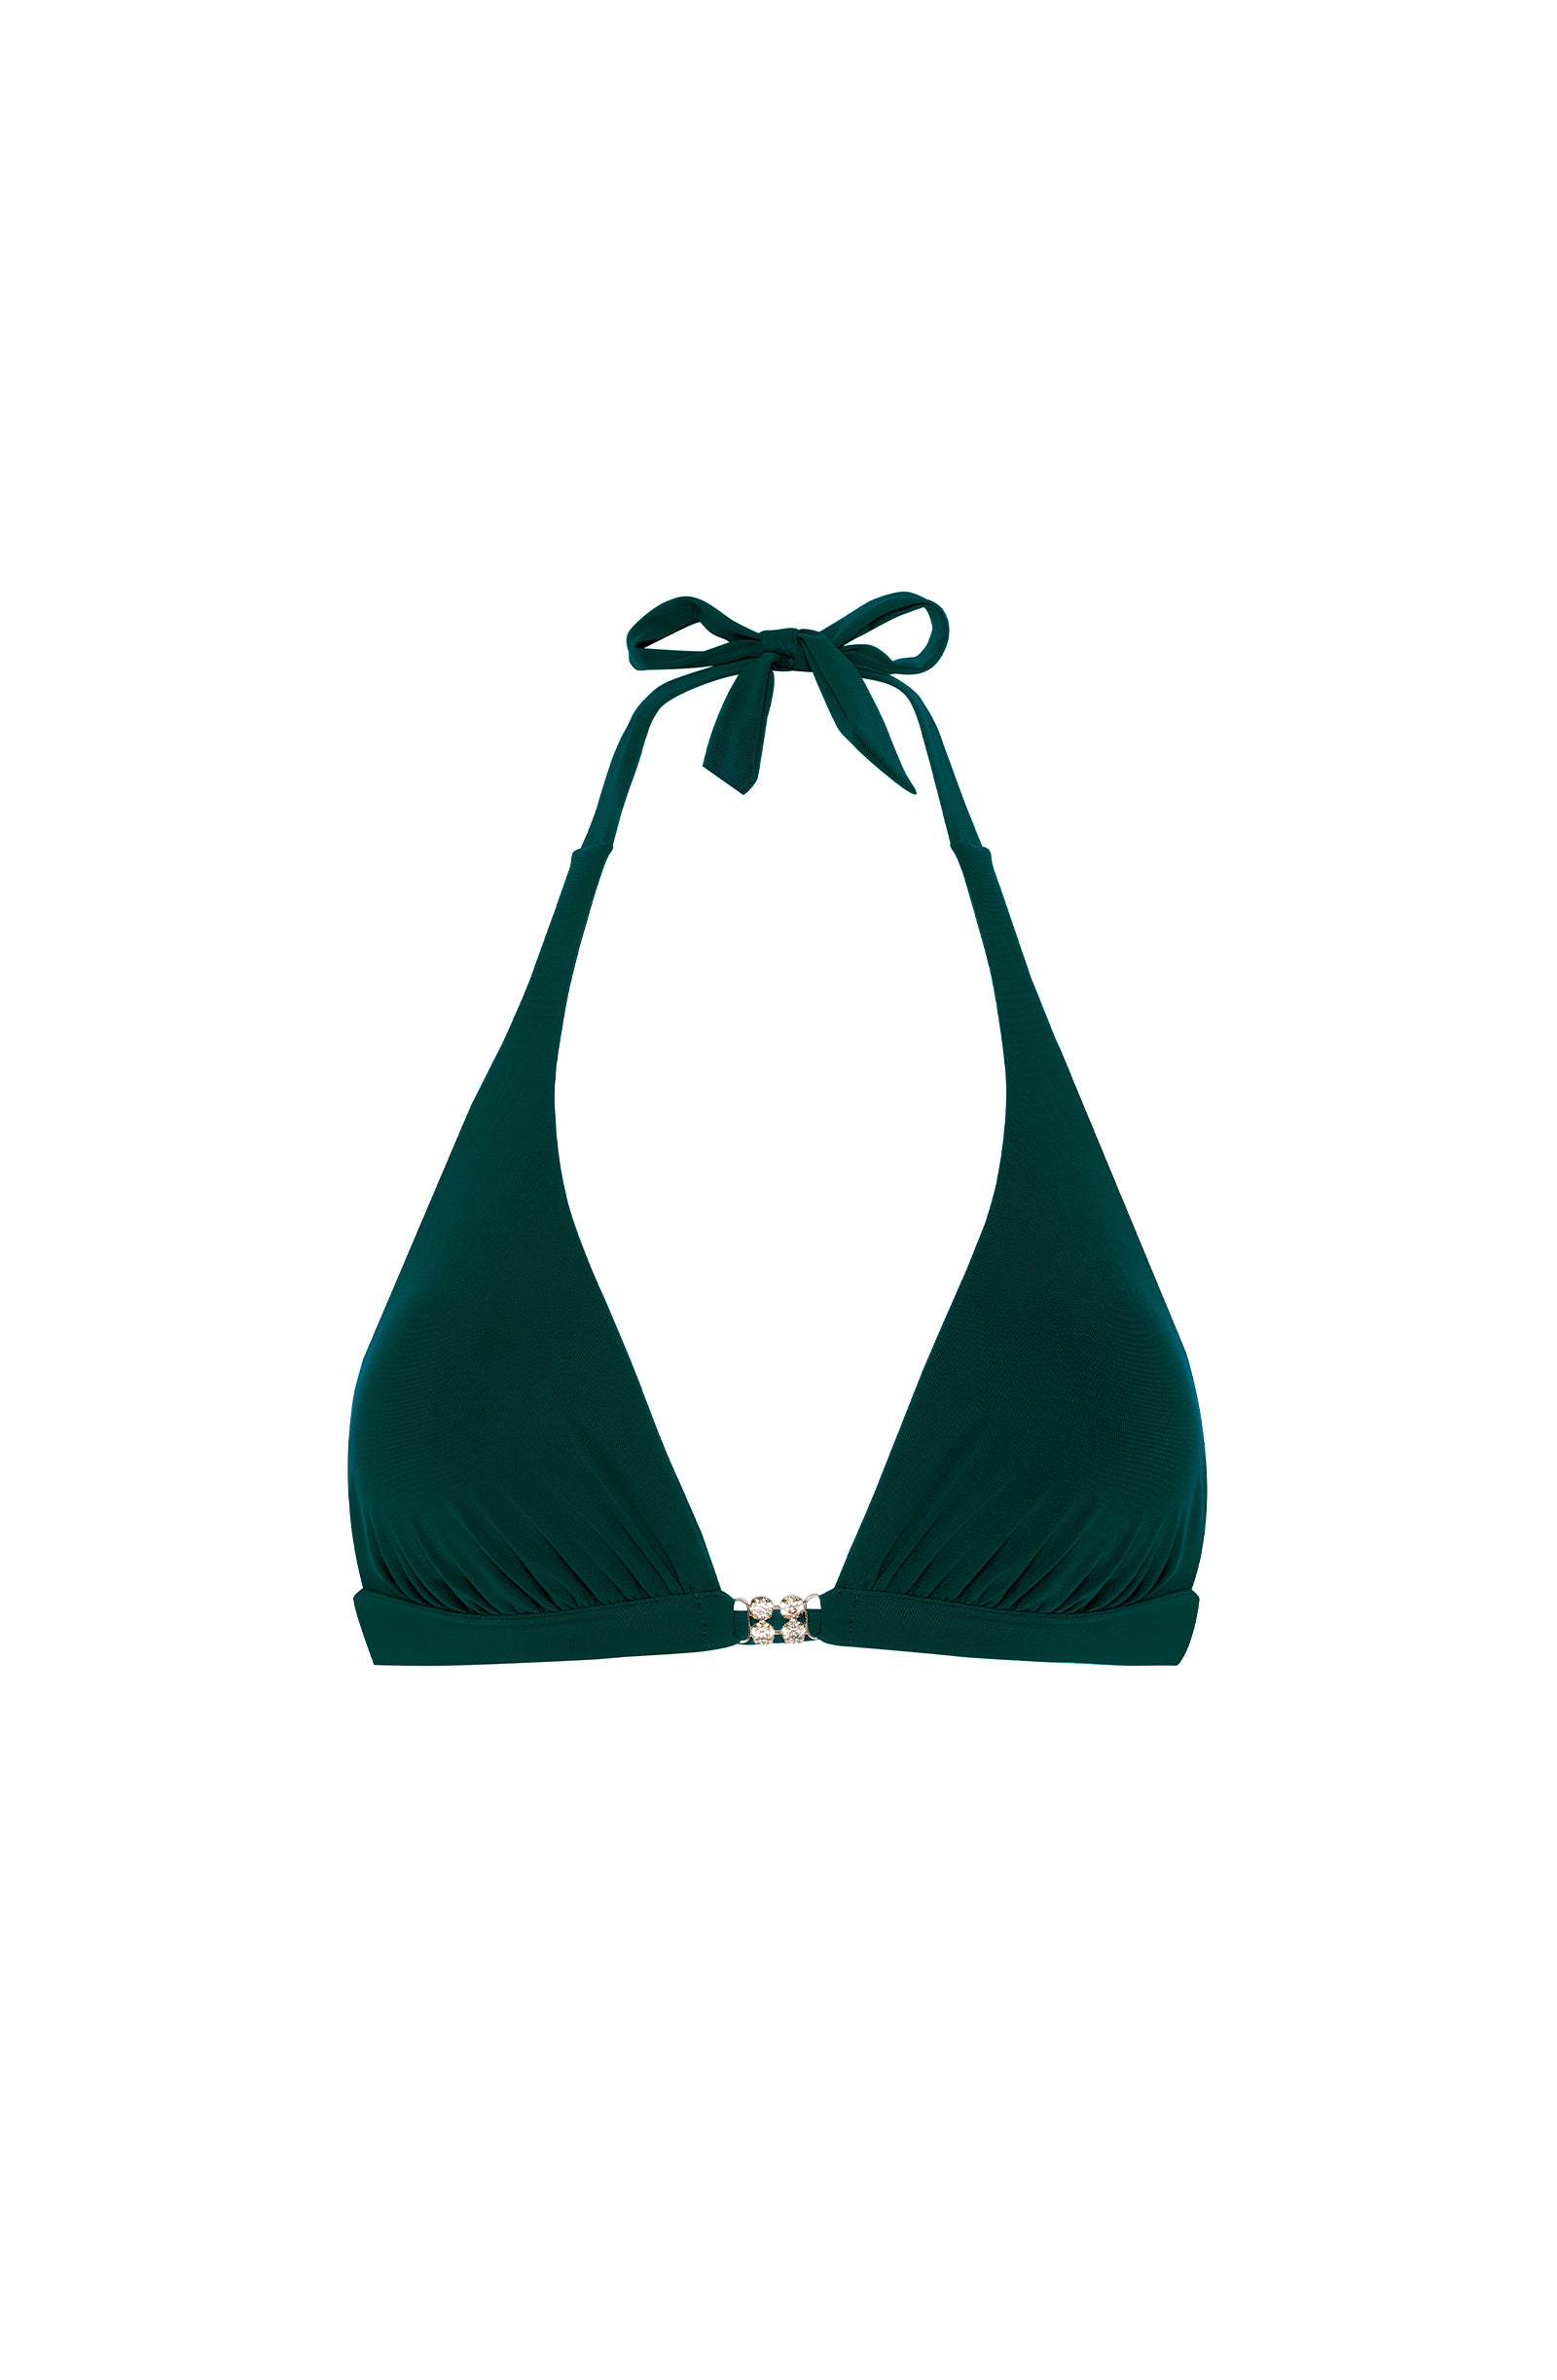 anea Bamboo triangle bikini top with jewels